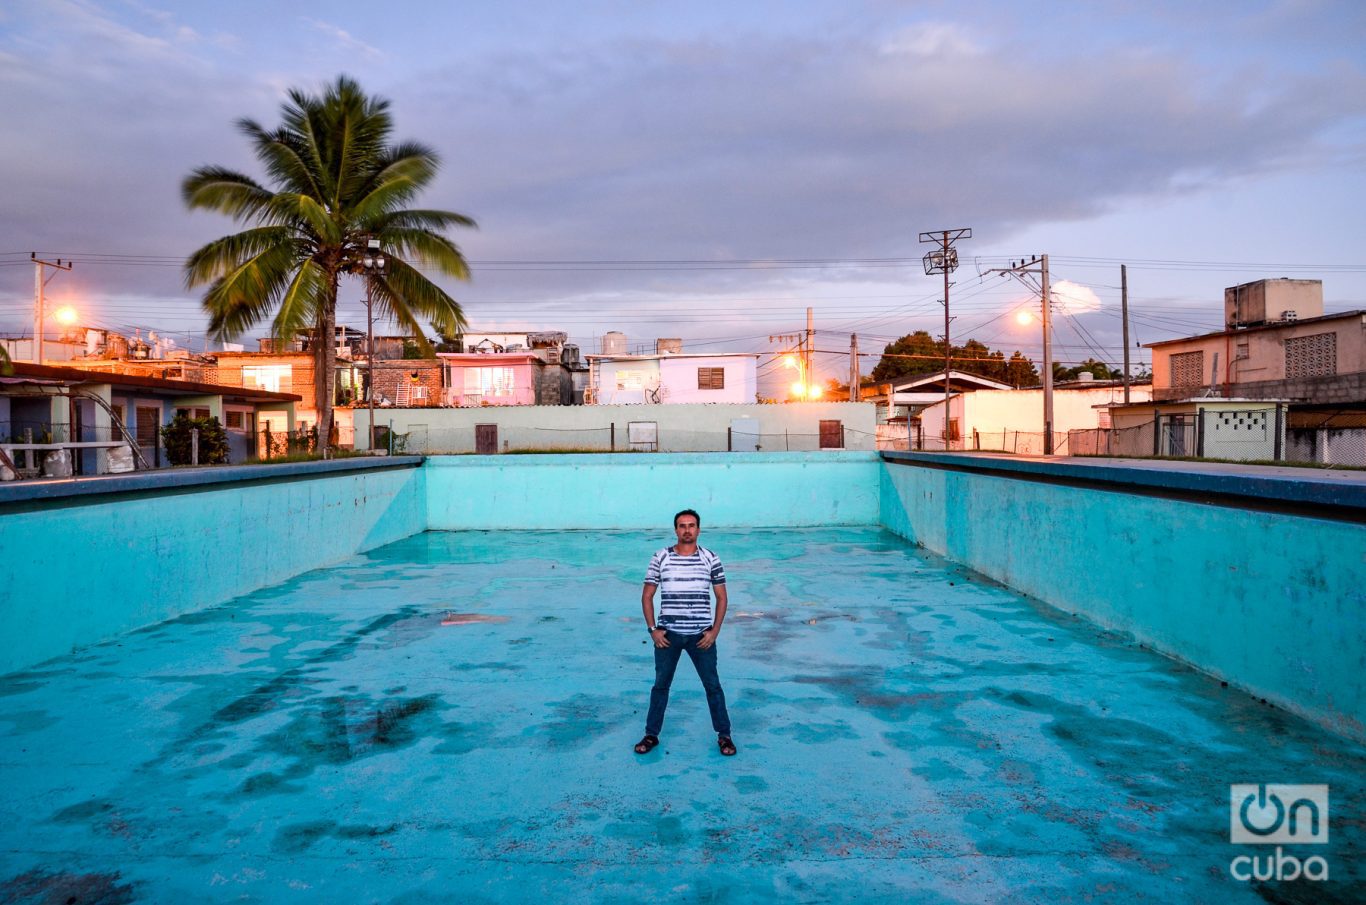 Autoretrato en la vieja piscina del Ateneo Deportivo Fernando de Dios Buñuel, donde cursé la primaria y aprendí a nadar. Foto: Kaloian.